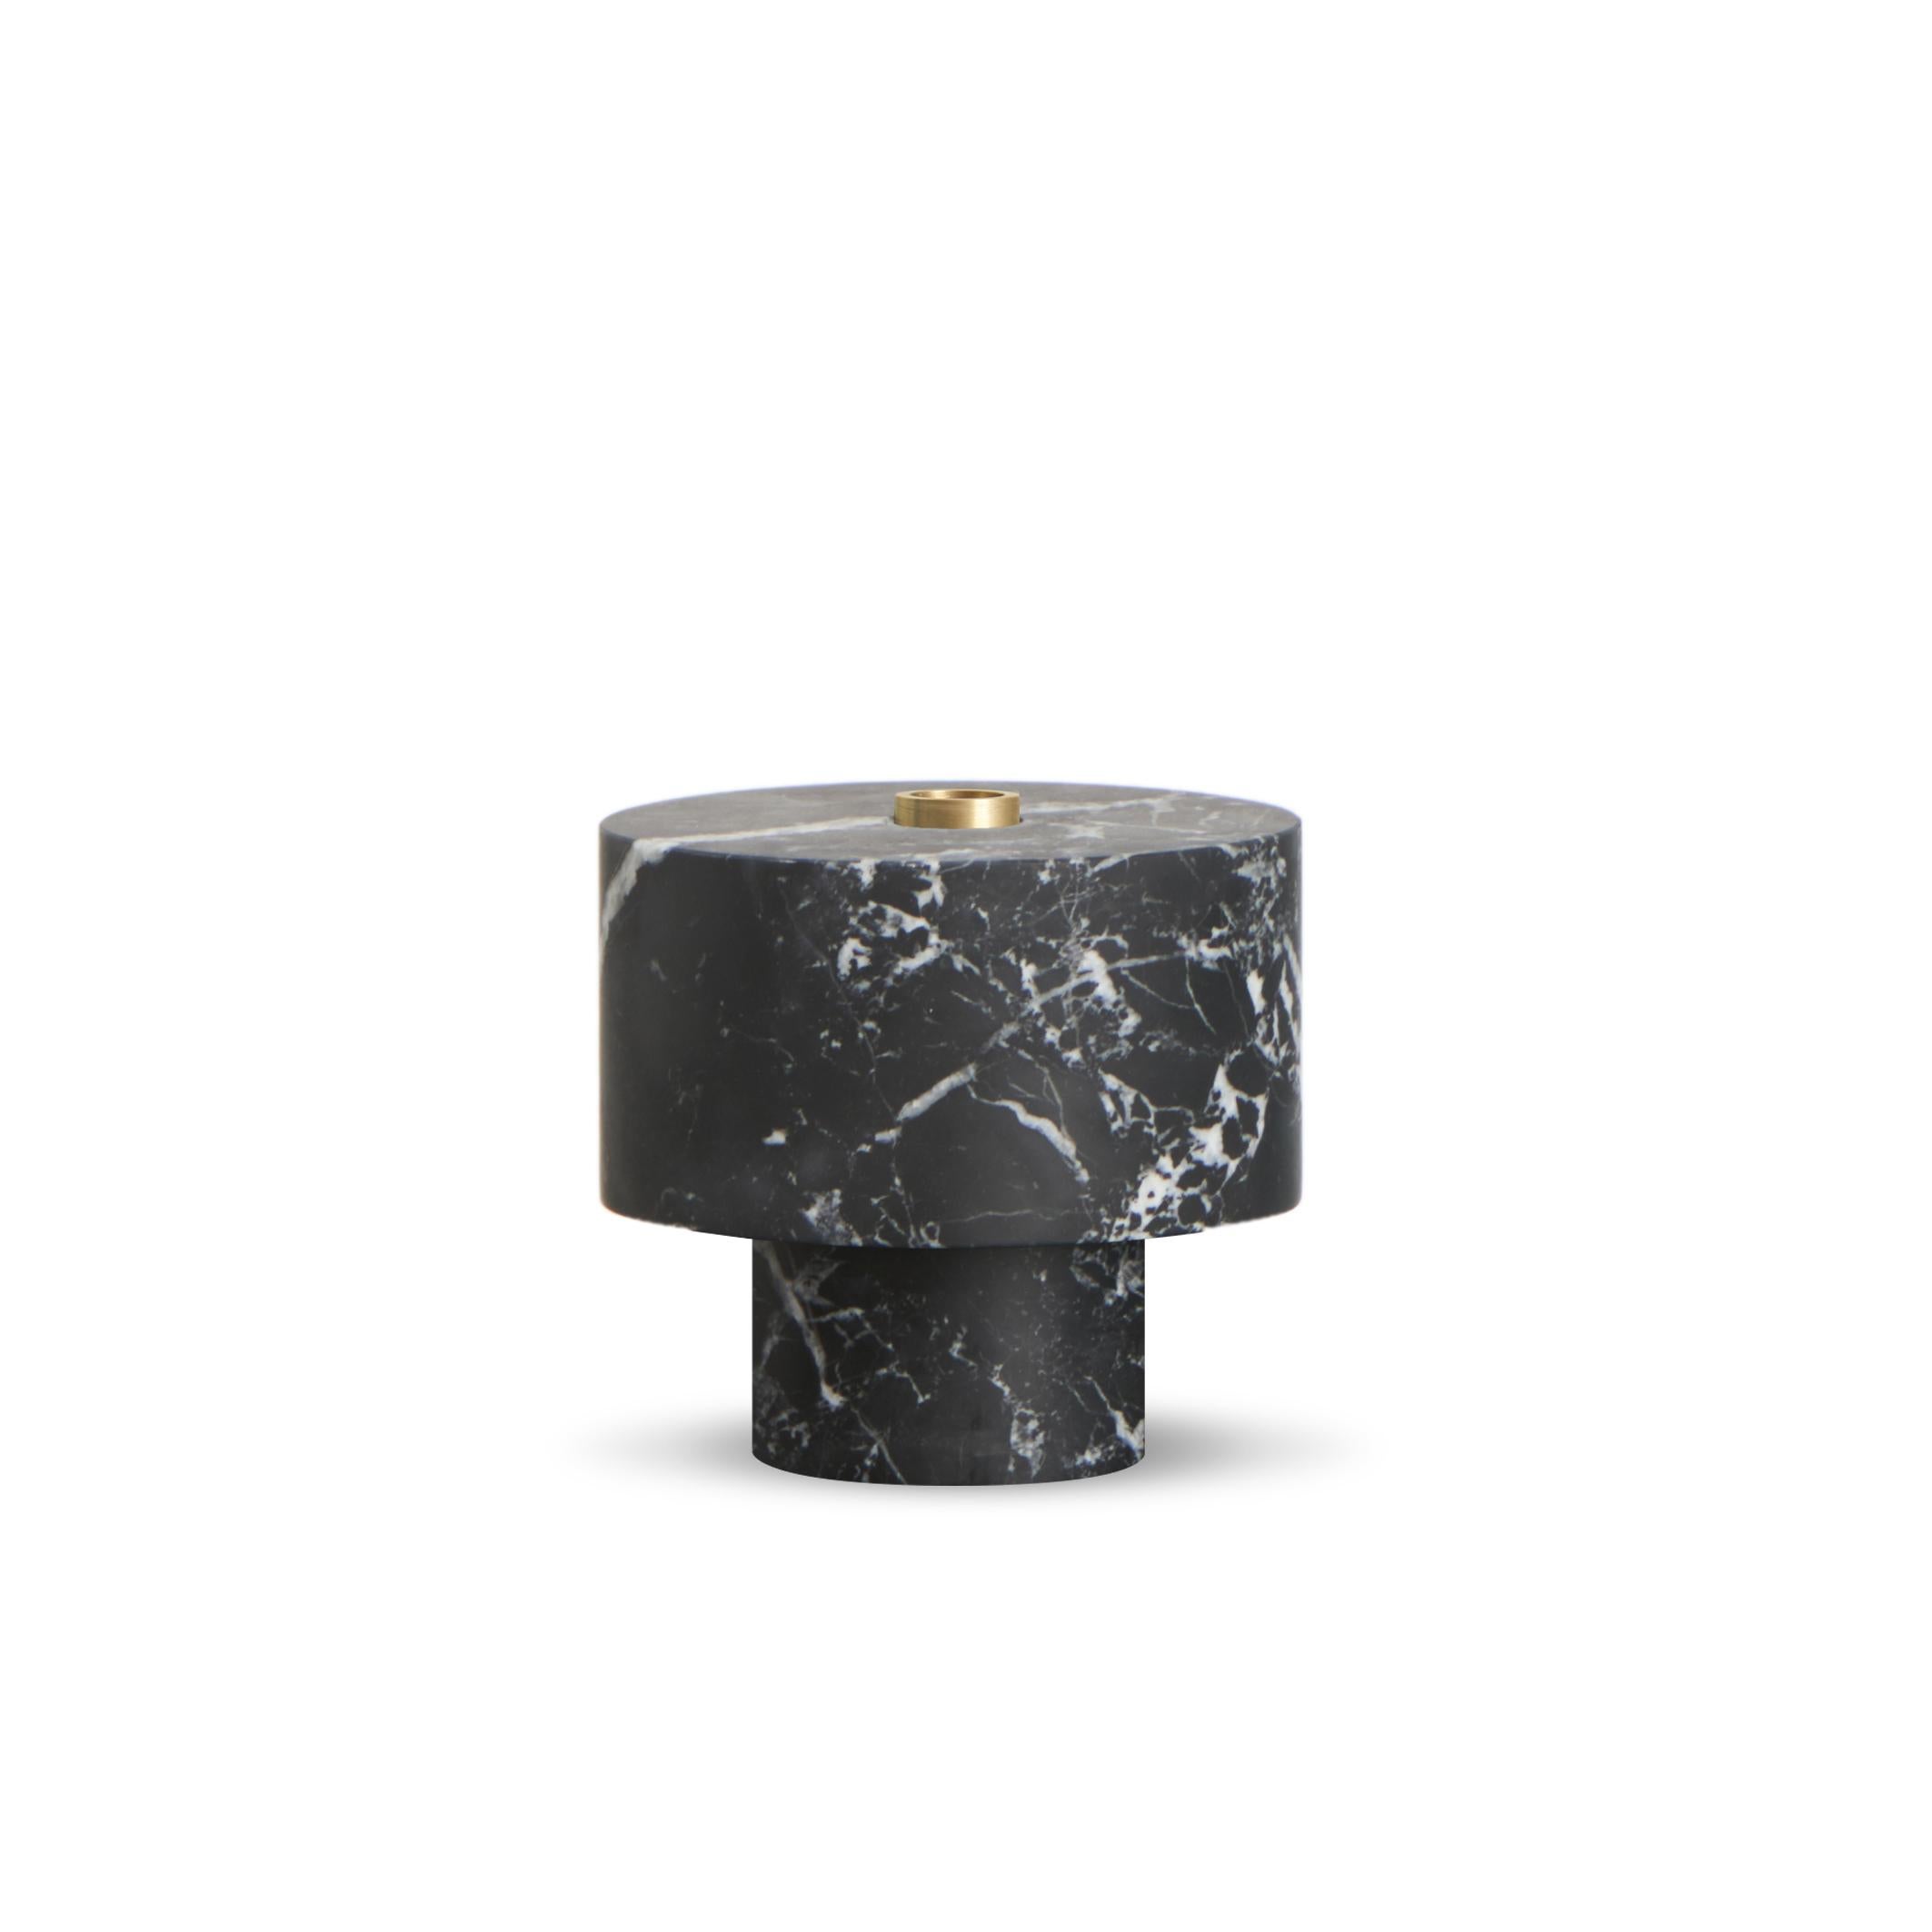 New Modern Candleholder in Green Marble, creator Karen Chekerdjian For Sale 2